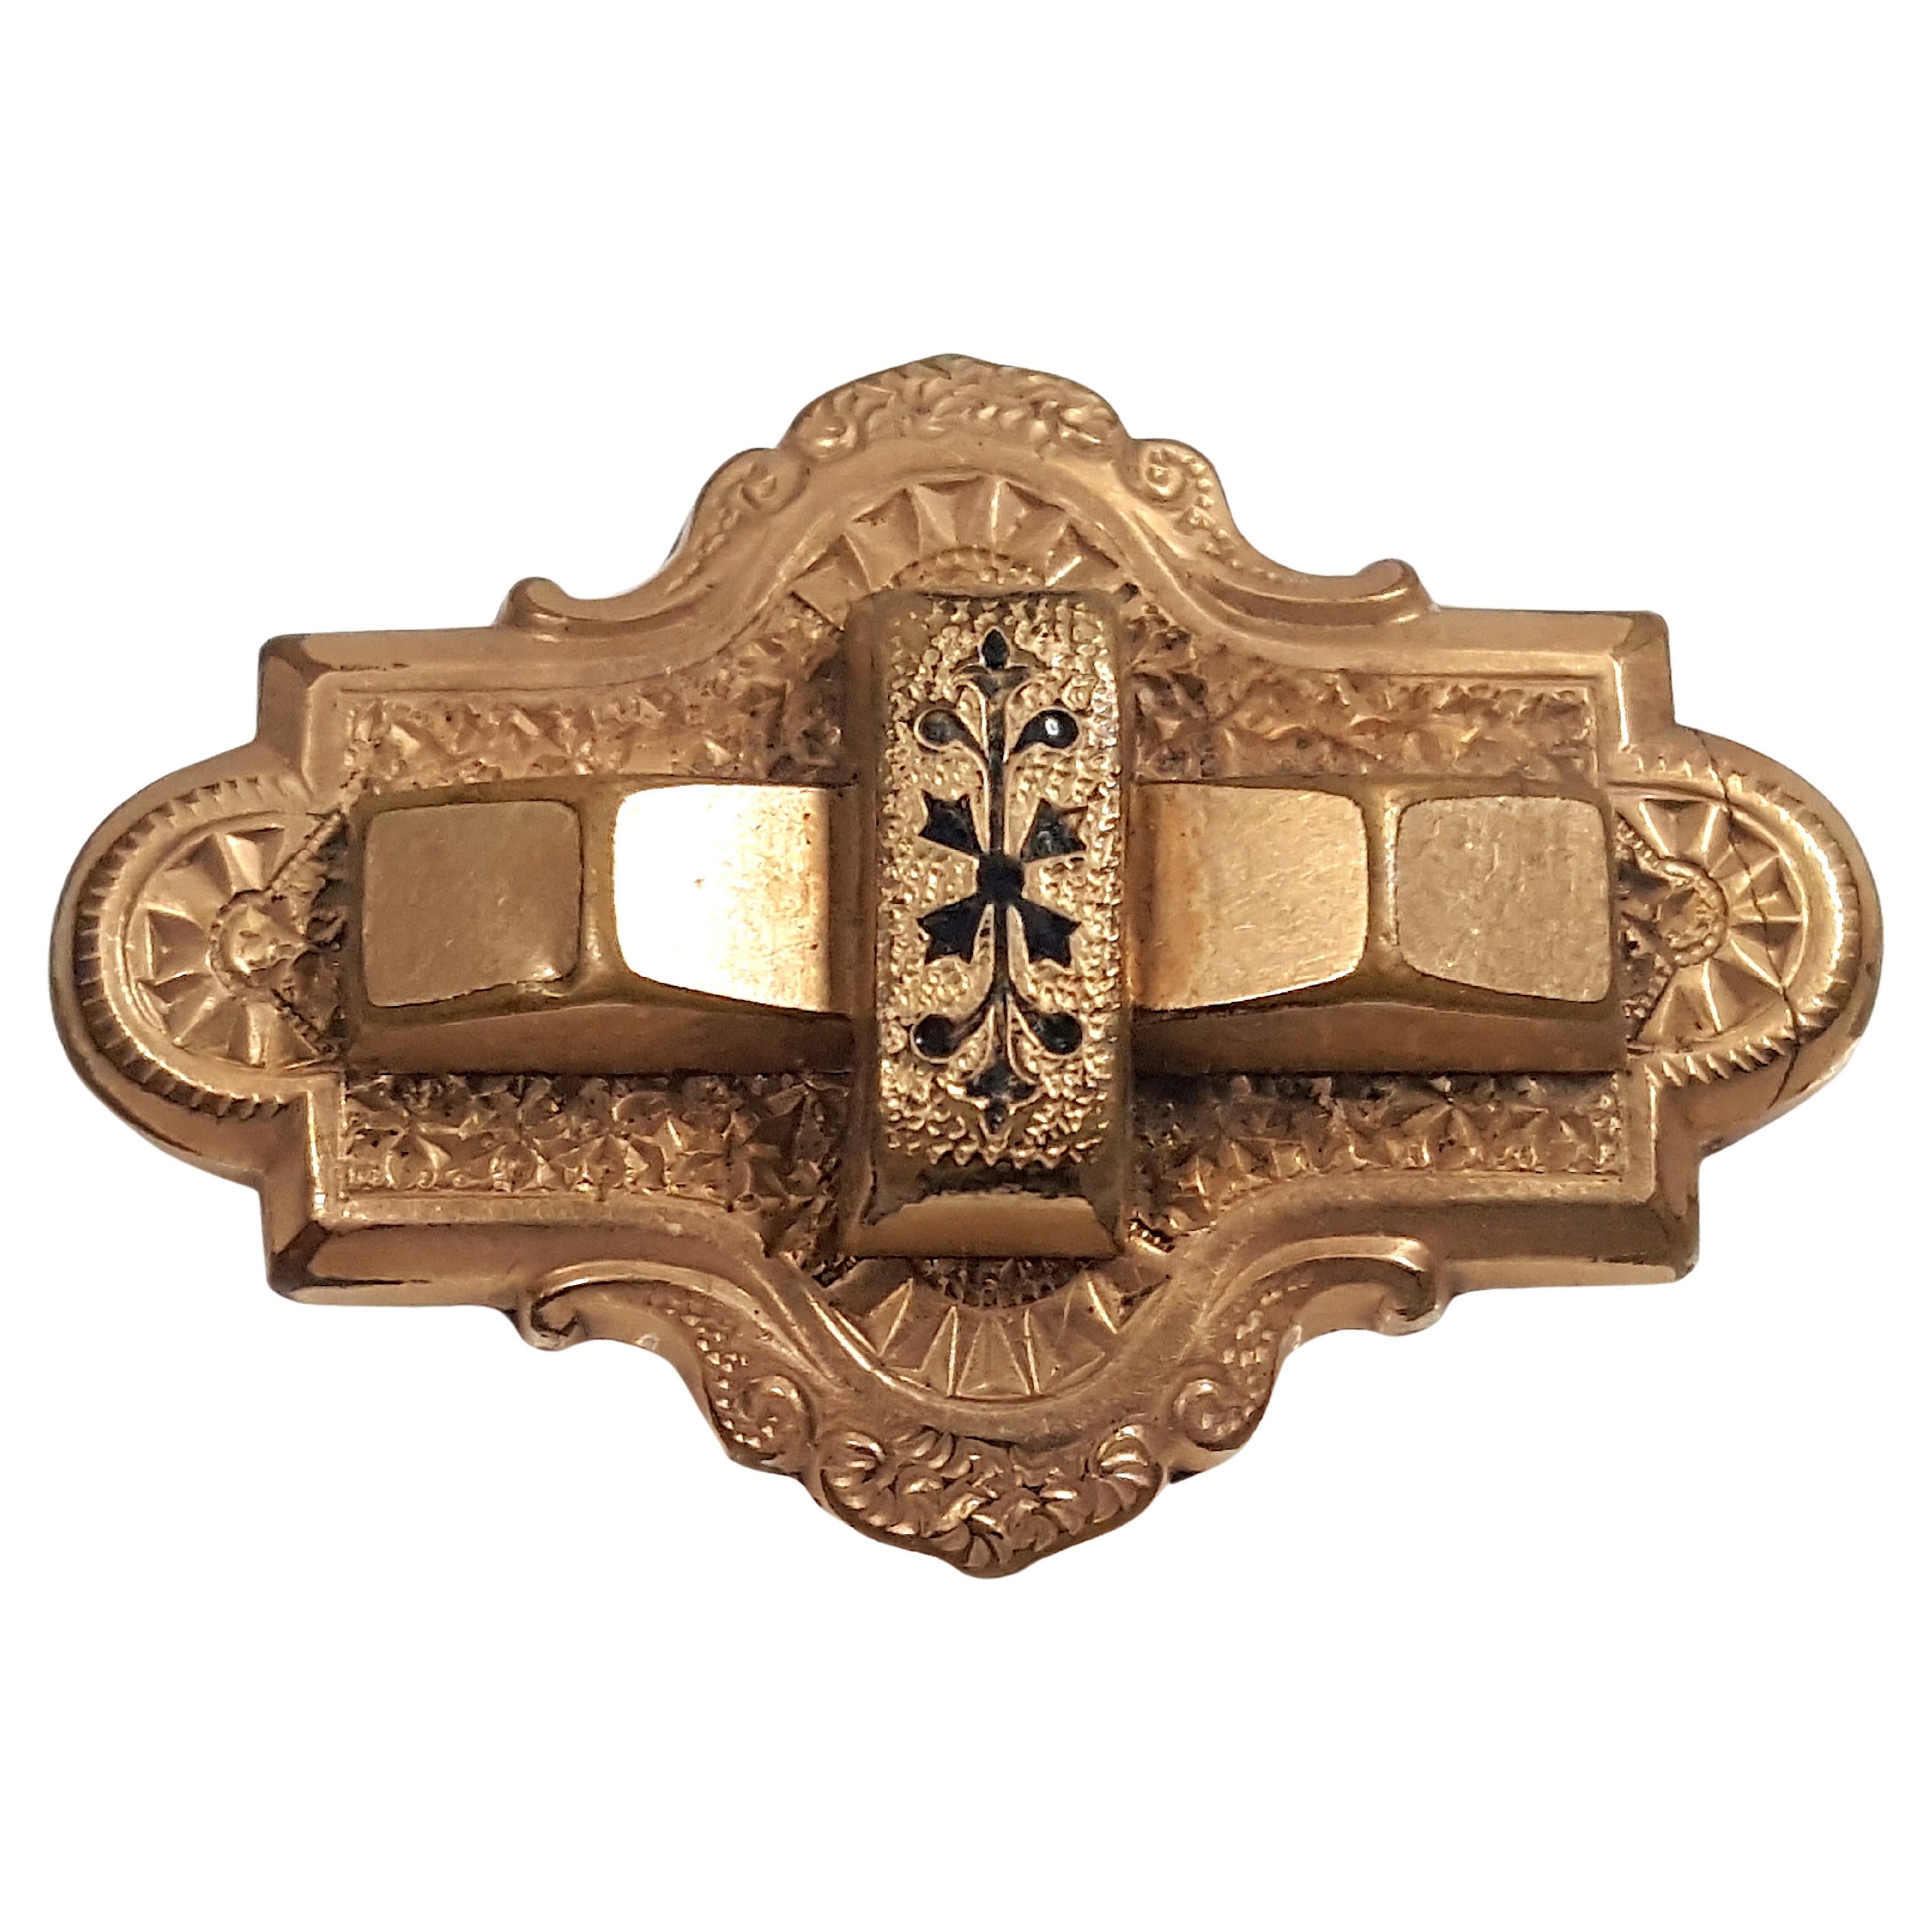 Dieses Amulett aus einer vergoldeten Kupfer- und Silberlegierung mit Nielloeinlage aus dem 15. Jahrhundert oder älter ist eine aufwendig gravierte dreidimensionale Brosche und ein Anhänger, die den Inbegriff des dekorativen Miniatur-Niello  in der